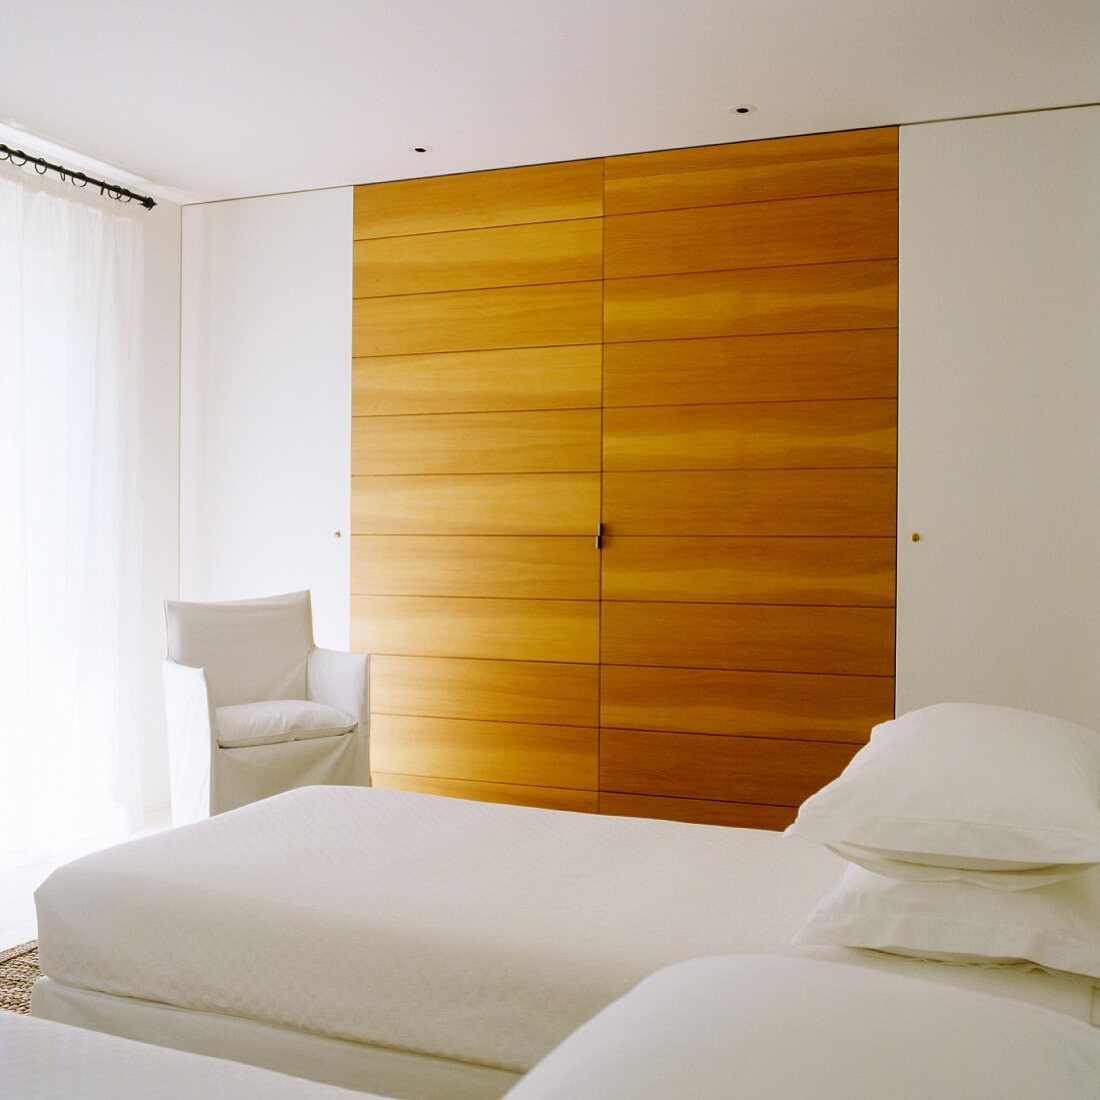 Eingebauter Schlafzimmerschrank mit interessantem Kontrast durch seitlich unauffällig weiße Türen und massgefertigte Holzelemente